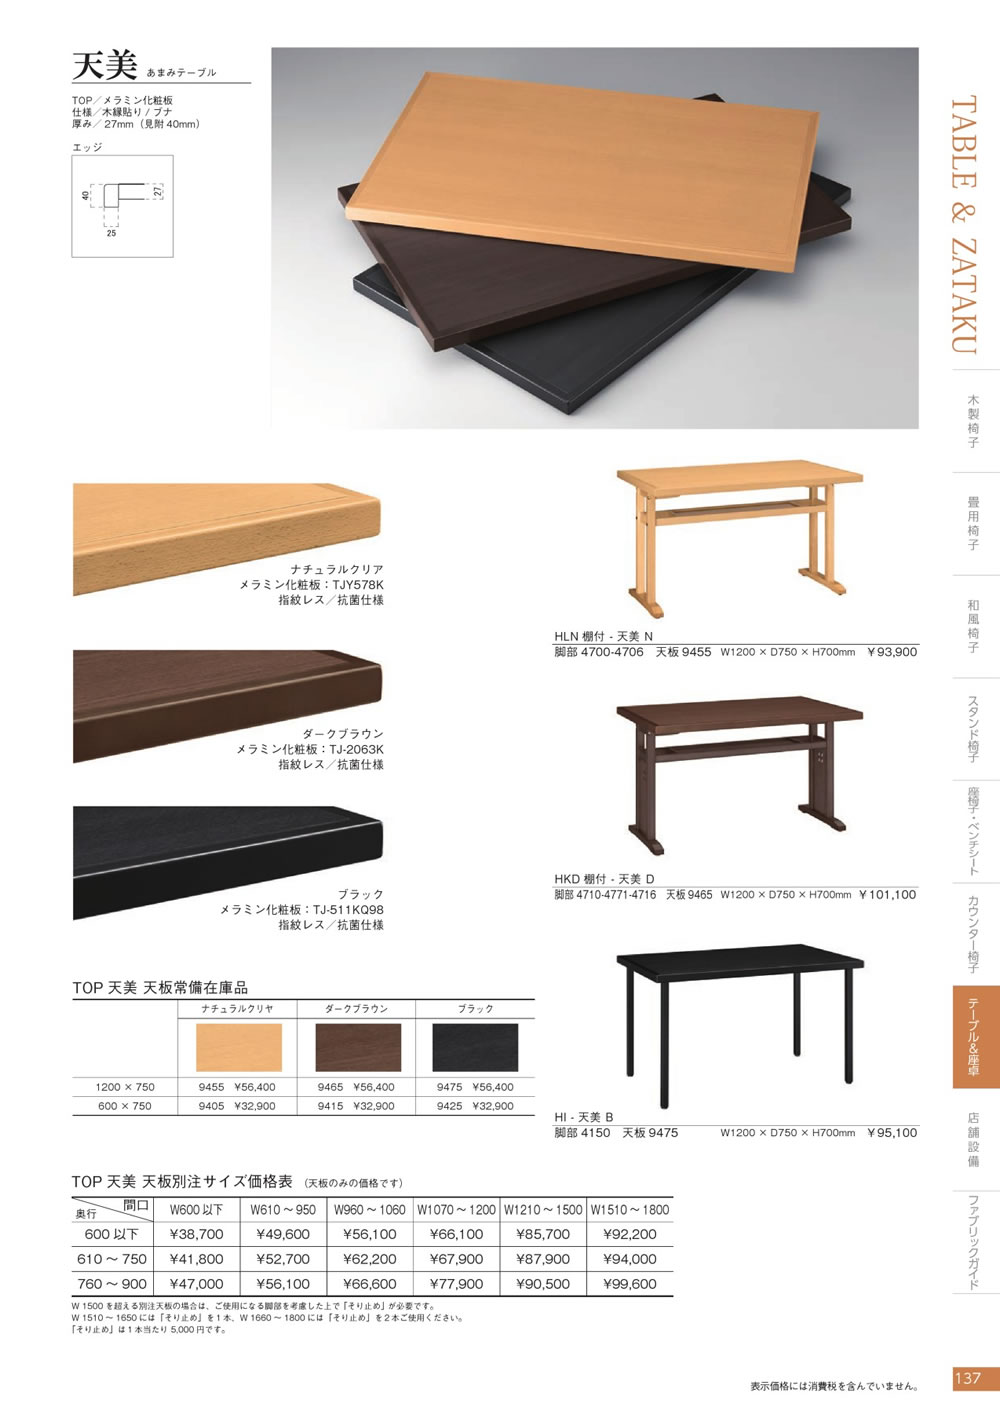 マルカツカタログ P.137 天美テーブル - 業務用家具通販